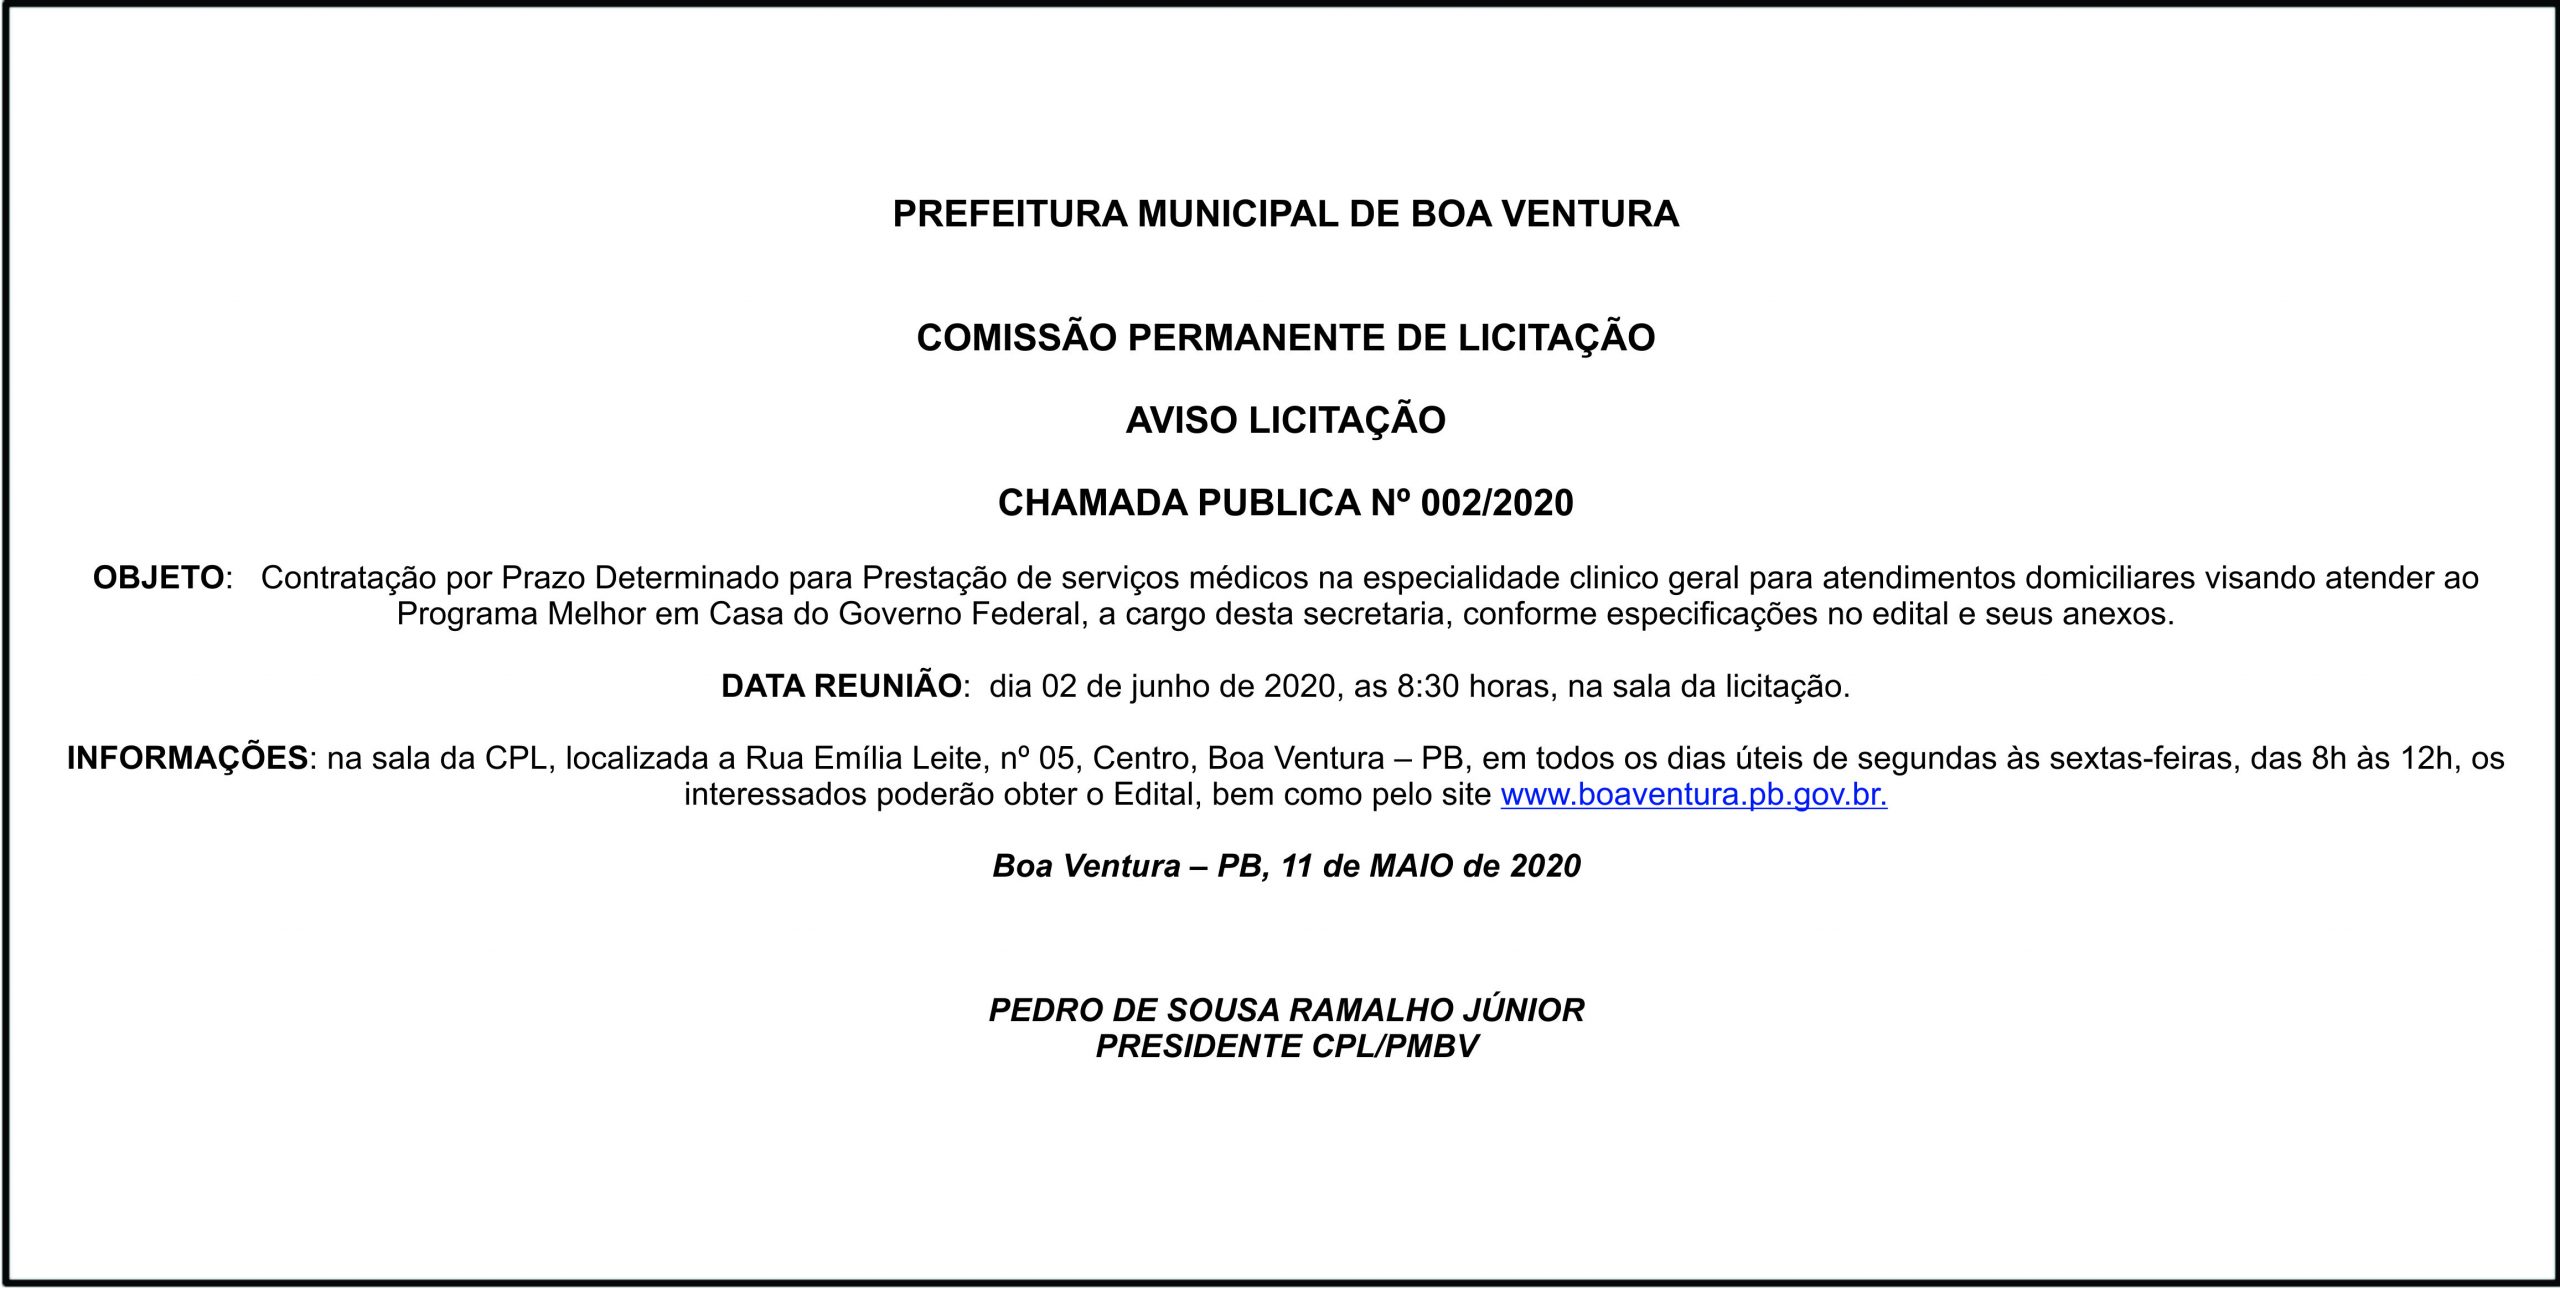 PREFEITURA MUNICIPAL DE BOA VENTURA – AVISO LICITAÇÃO – CHAMADA PUBLICA Nº 002/2020